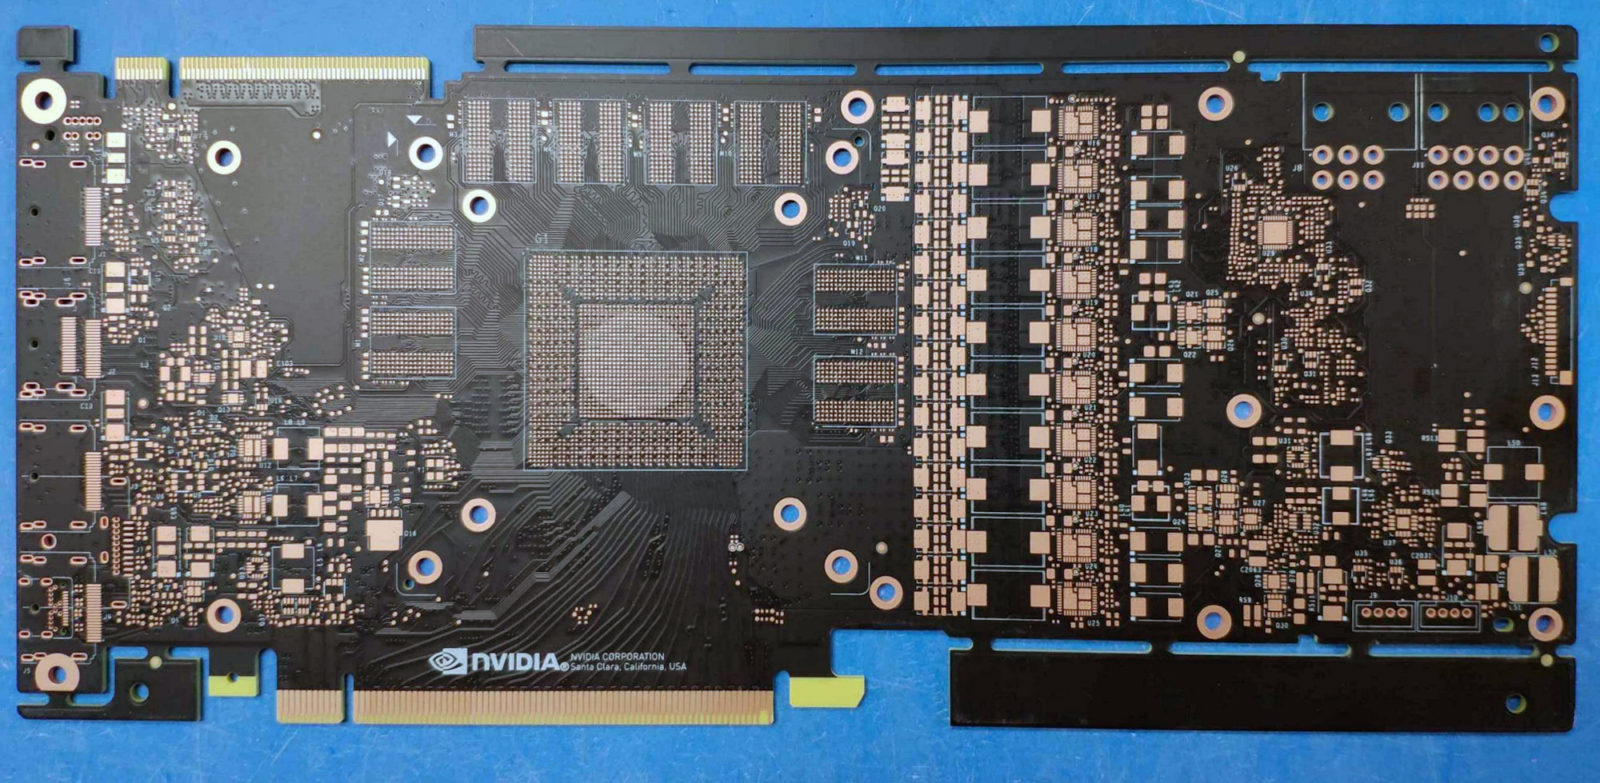 NVIDIA-GeForce-GTX-2080-1180-PCB-1-1600x783.jpg